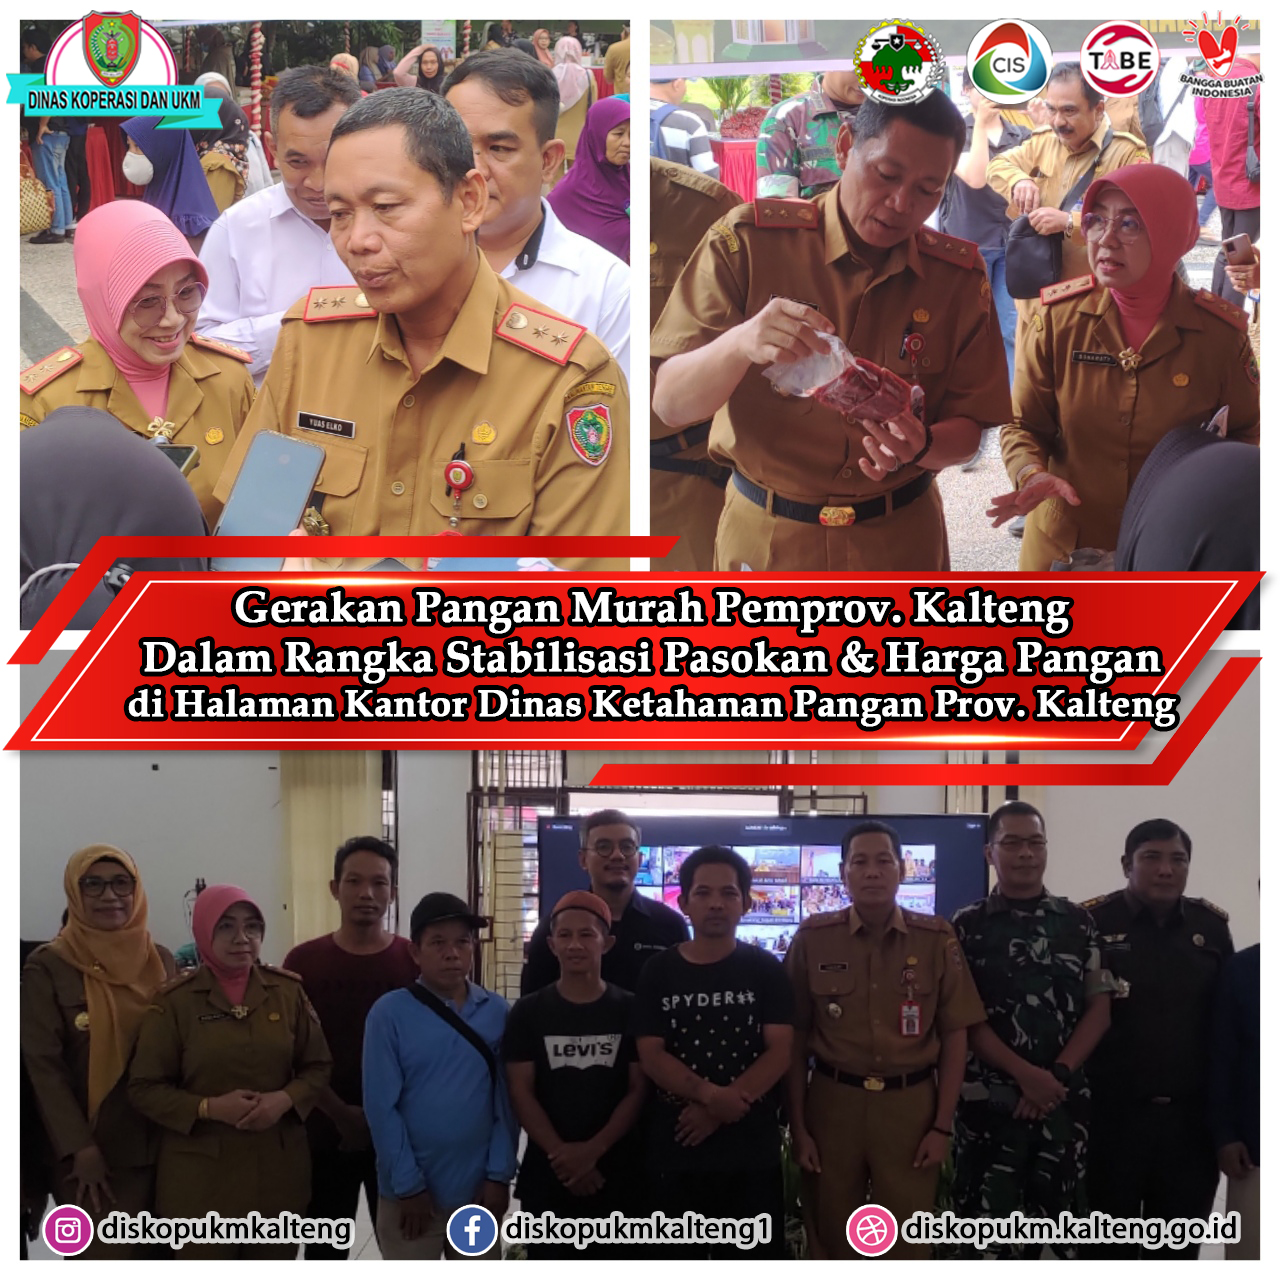 Pemerintah Provinsi Kalimantan Tengah melalui Dinas Ketahanan Pangan menyelenggarakan Gerakan Pengan Murah